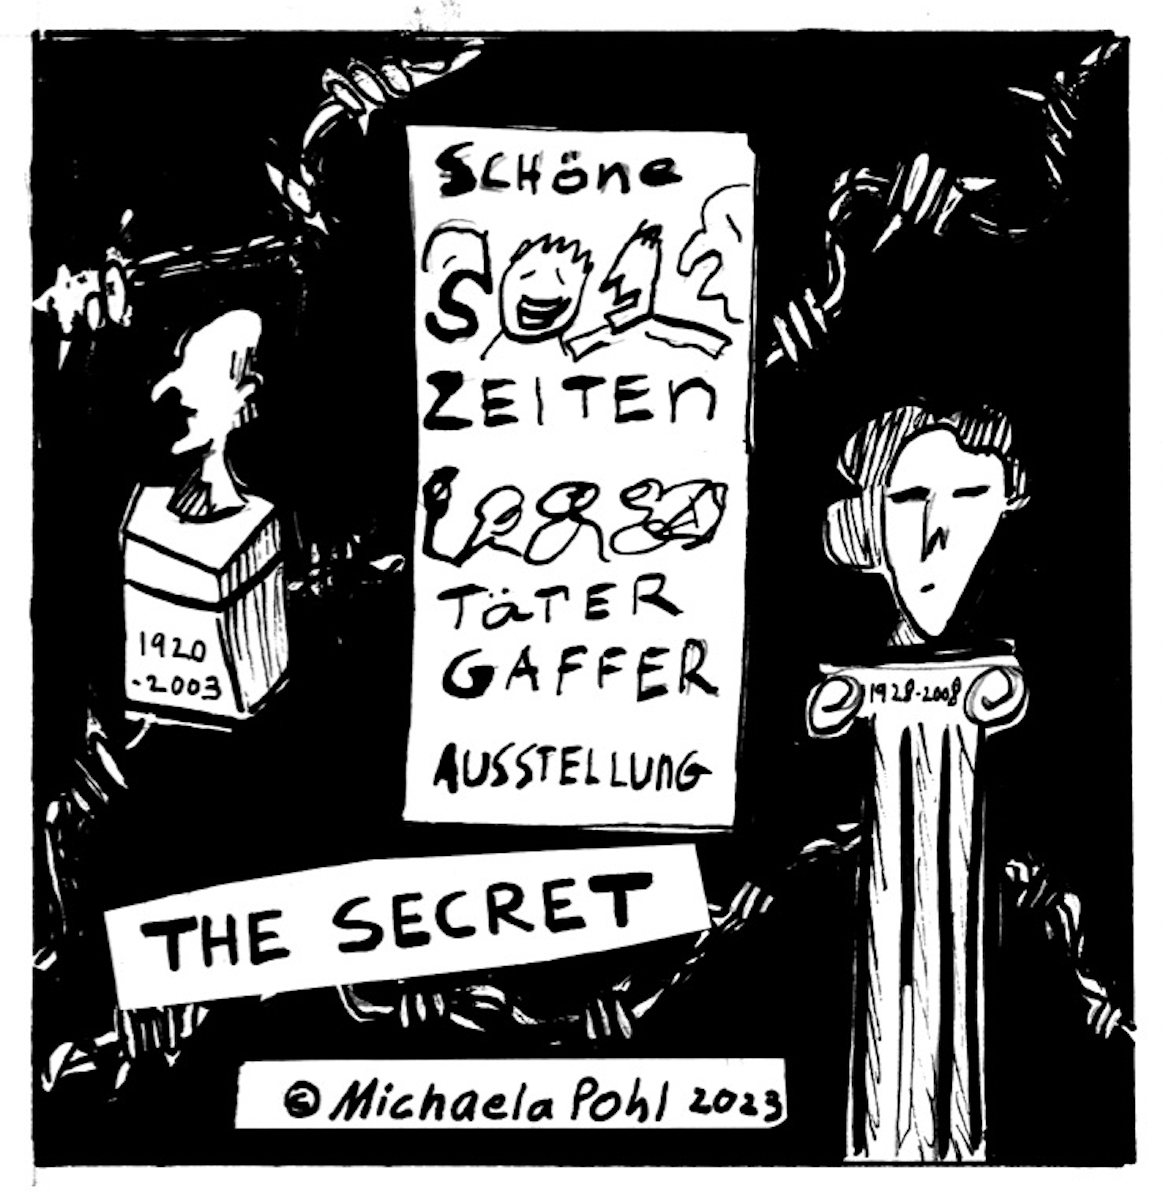 â€œThe Secret Â© Michaela Pohl 2023â€
A poster reads â€œSchÃ¶ne Zeiten TÃ¤ter Gaffer Austellungâ€ next to two bust statues, one with years 1920-2003, the other 1928-2008